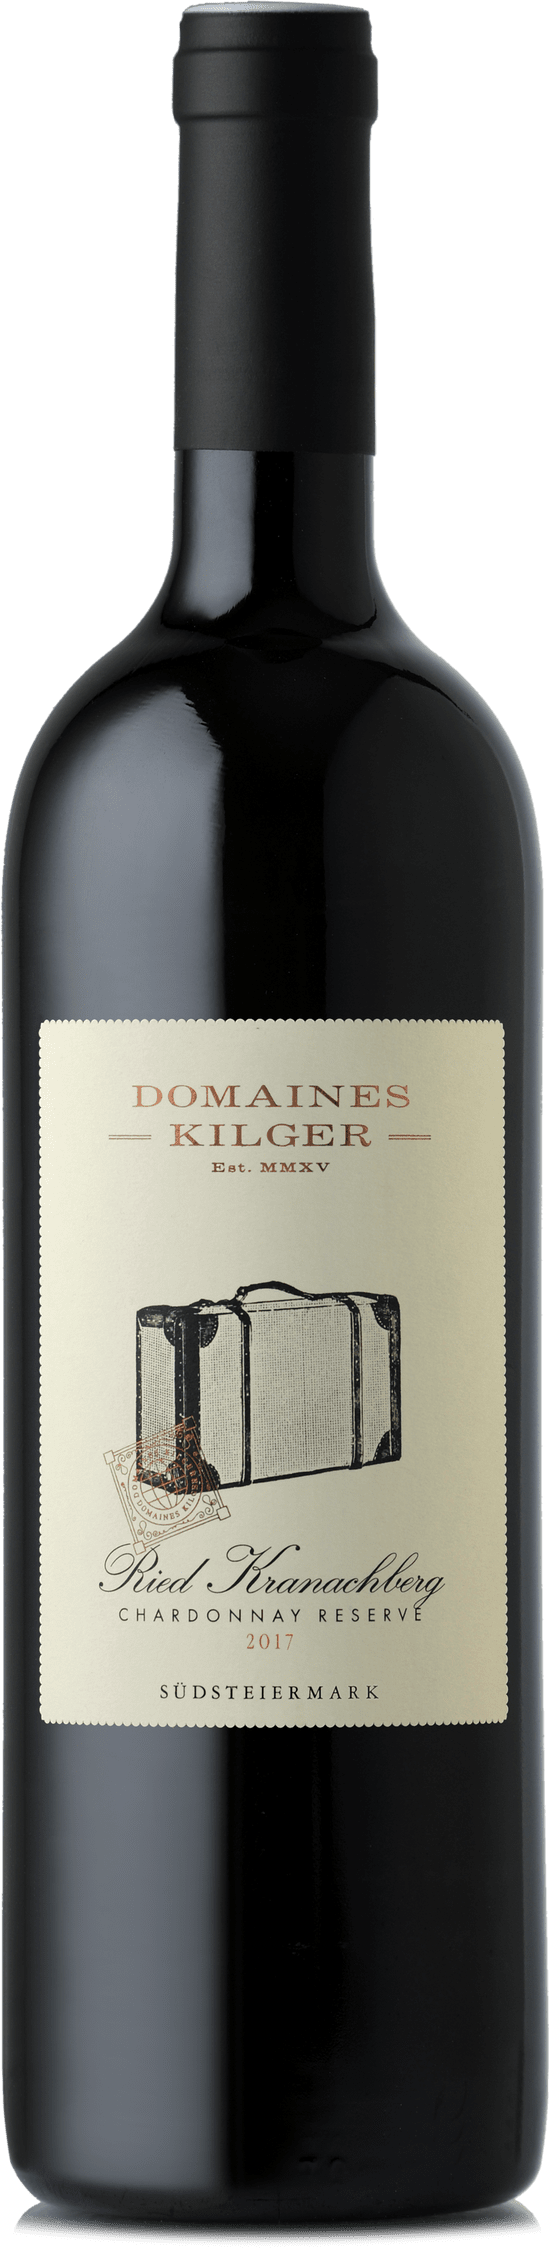 2017 Magnum Chardonnay Ried KRANACHBERG Reserve